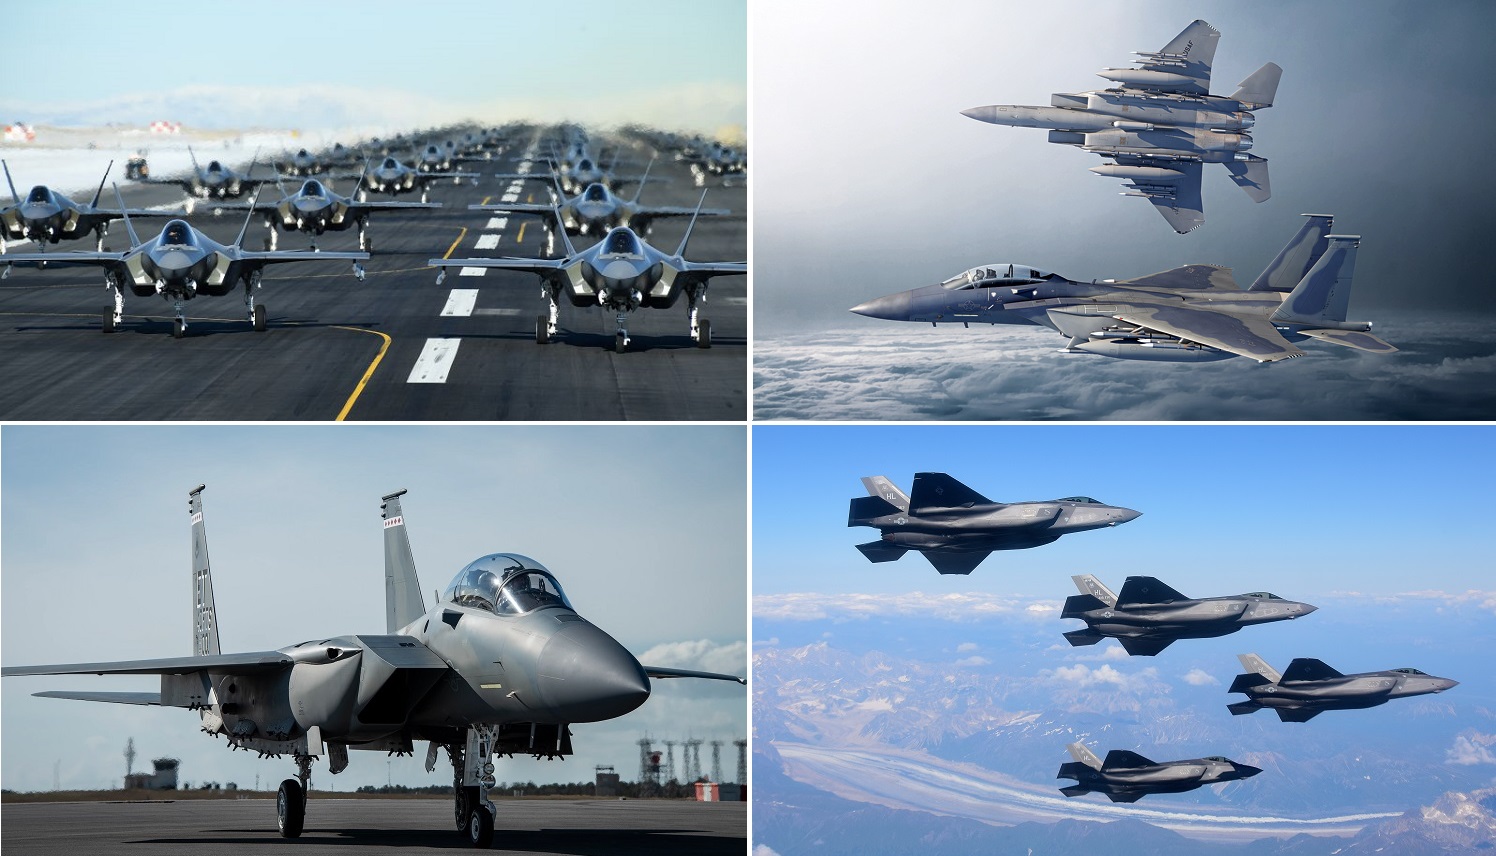 Per la prima volta nella storia recente, l'aeronautica militare statunitense acquisterà 72 jet da combattimento: il servizio ha richiesto fondi per ordinare 48 F-35 e 24 F-15EX aggiornati.